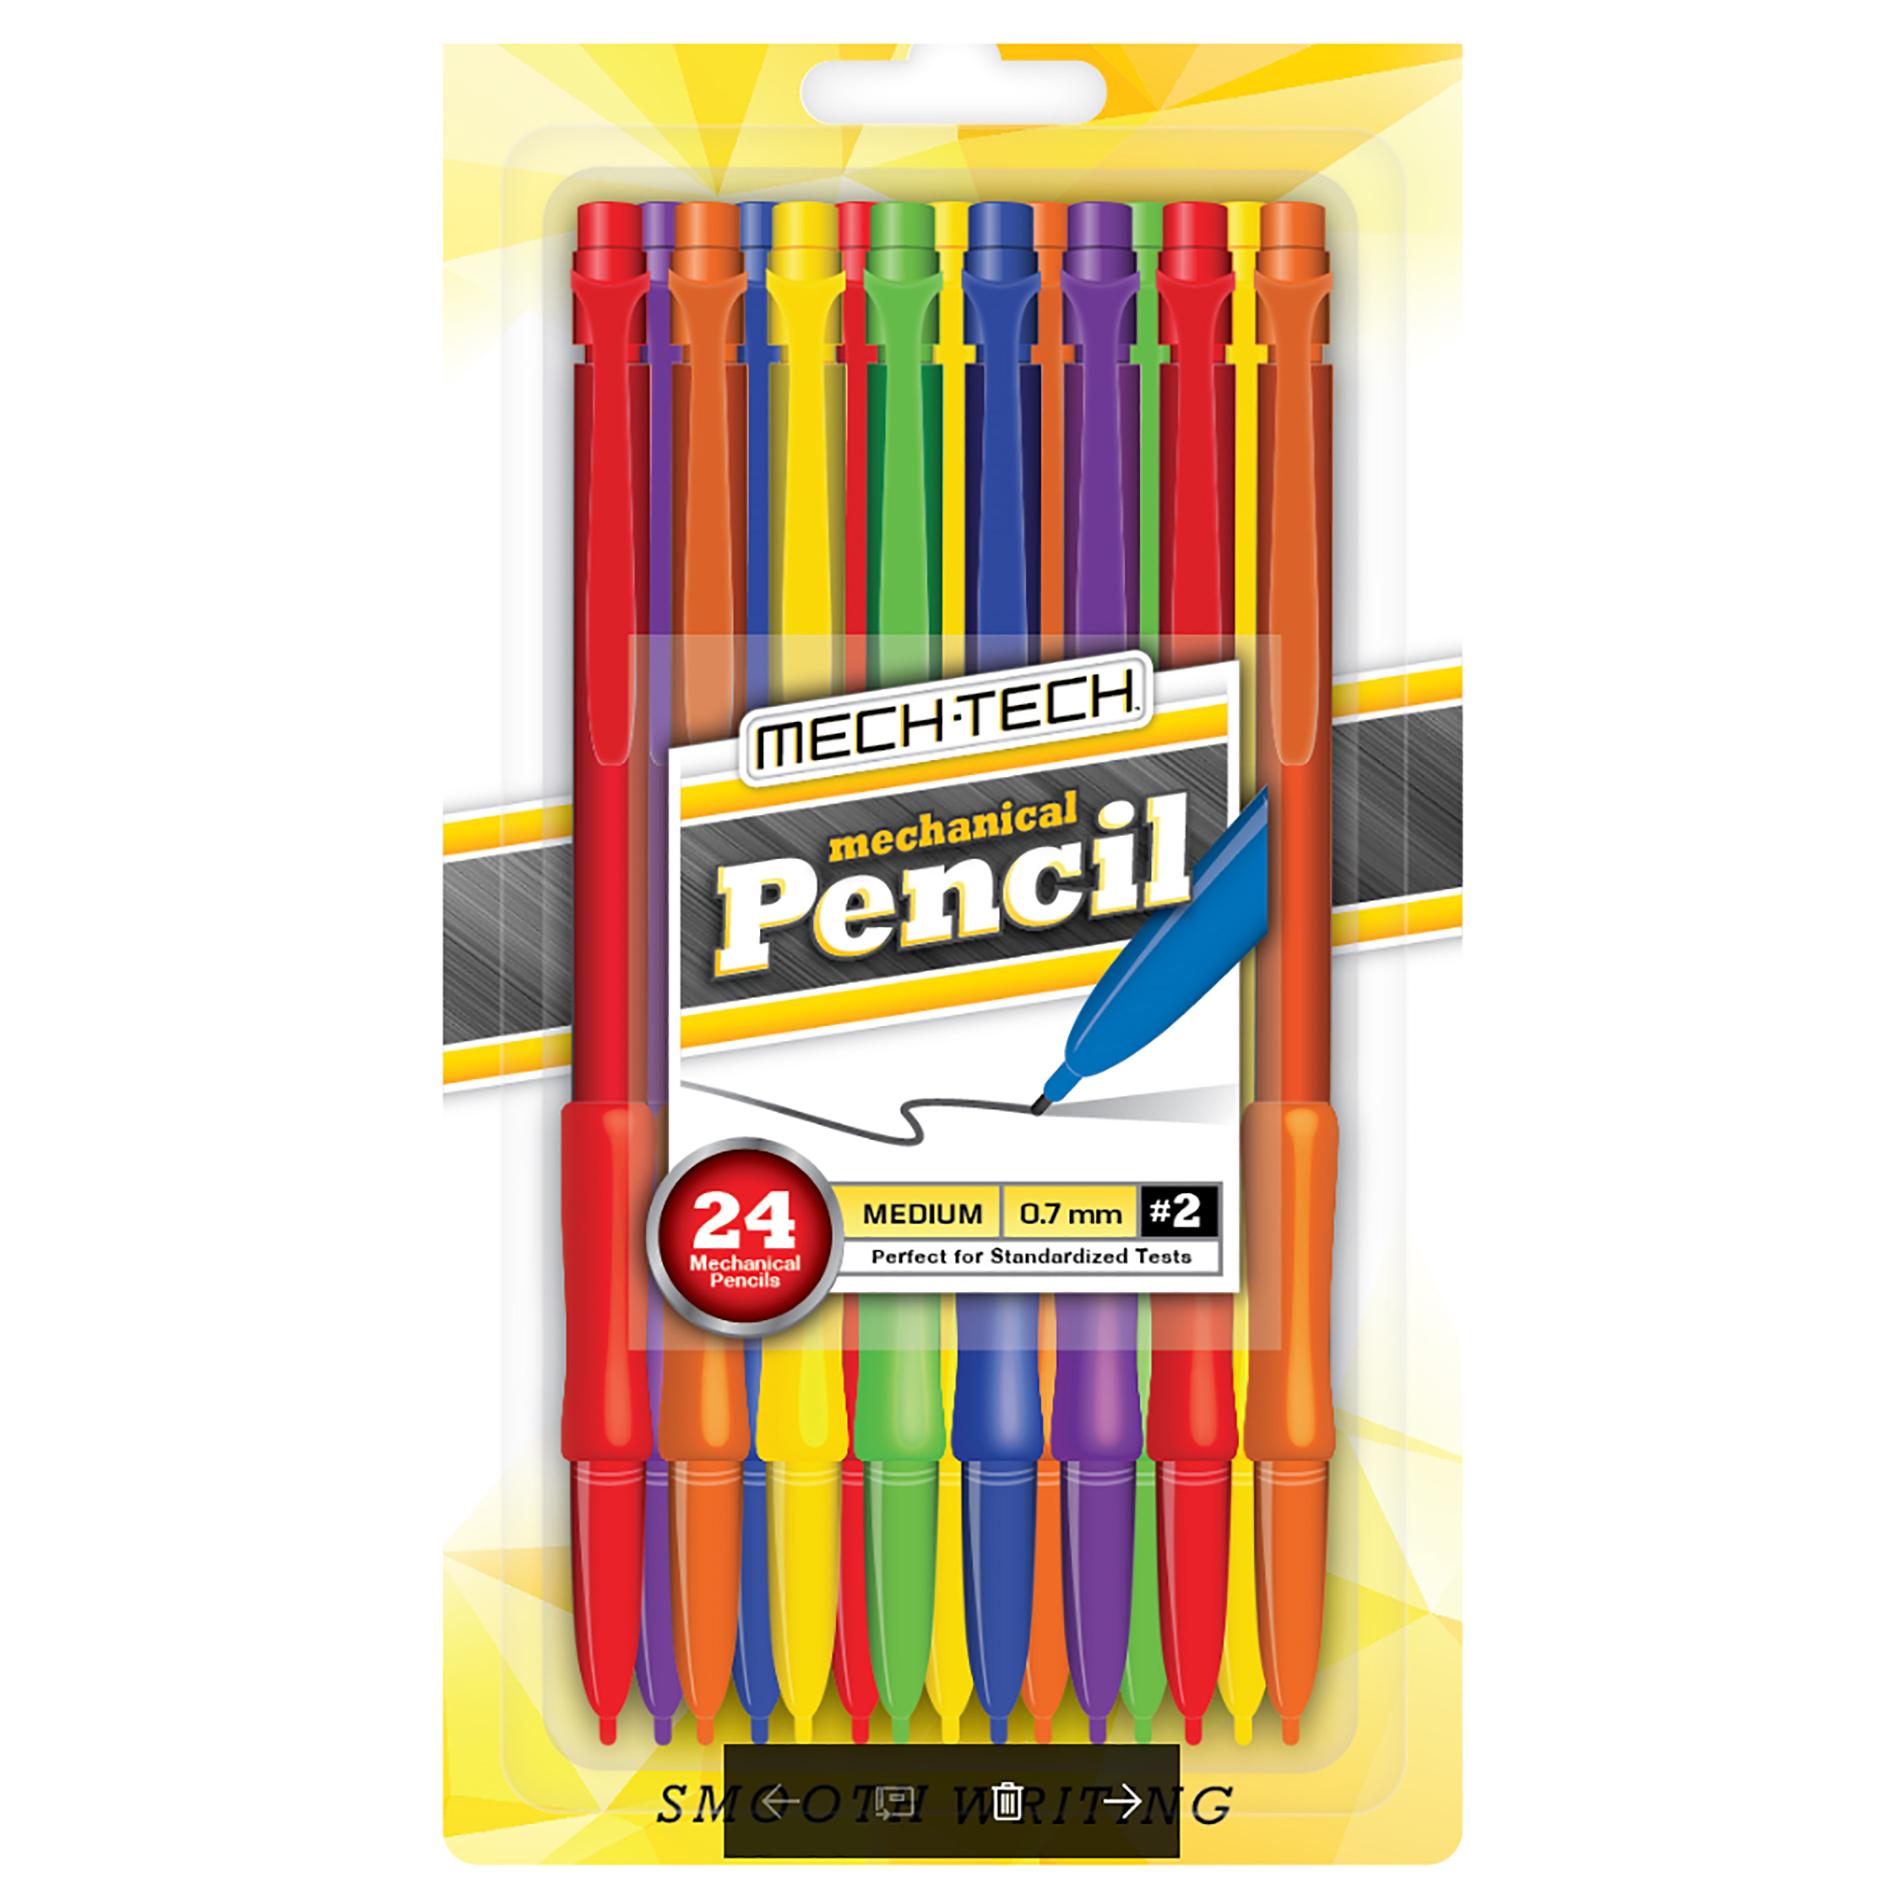 Mech Tech Mechanical Pencils, 24 Count